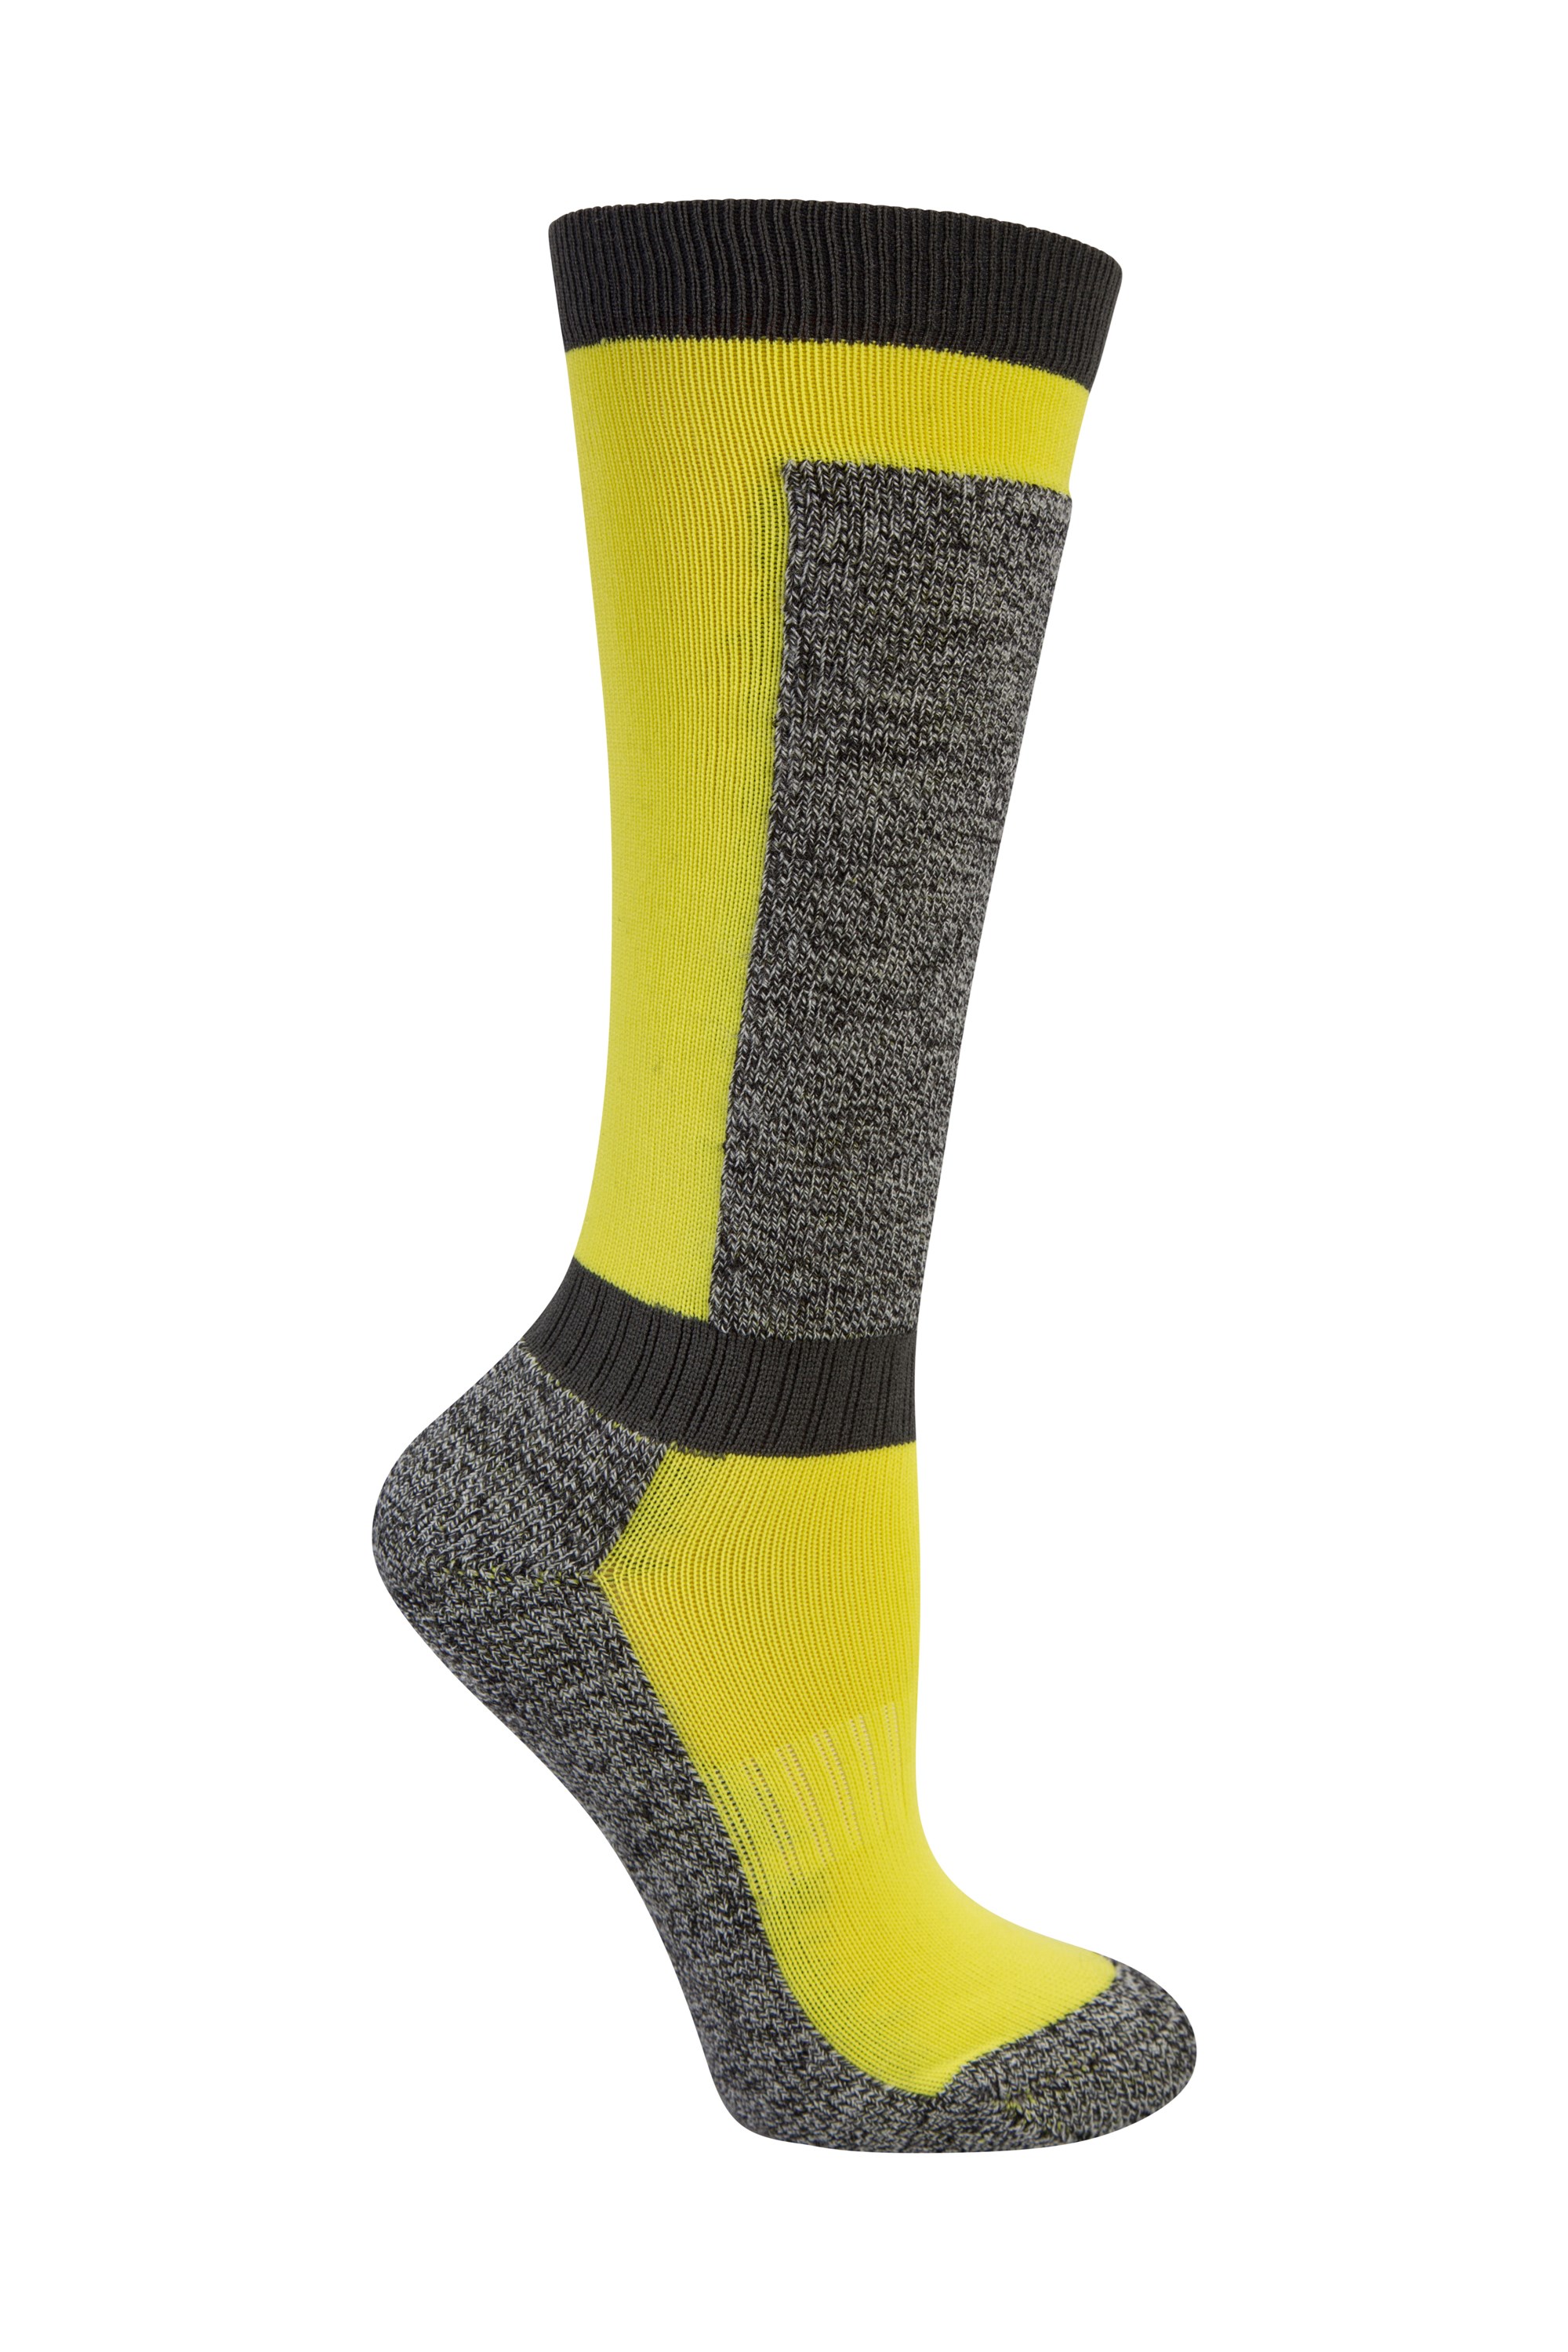 Merino Technical Kids Ski Socks - Grey